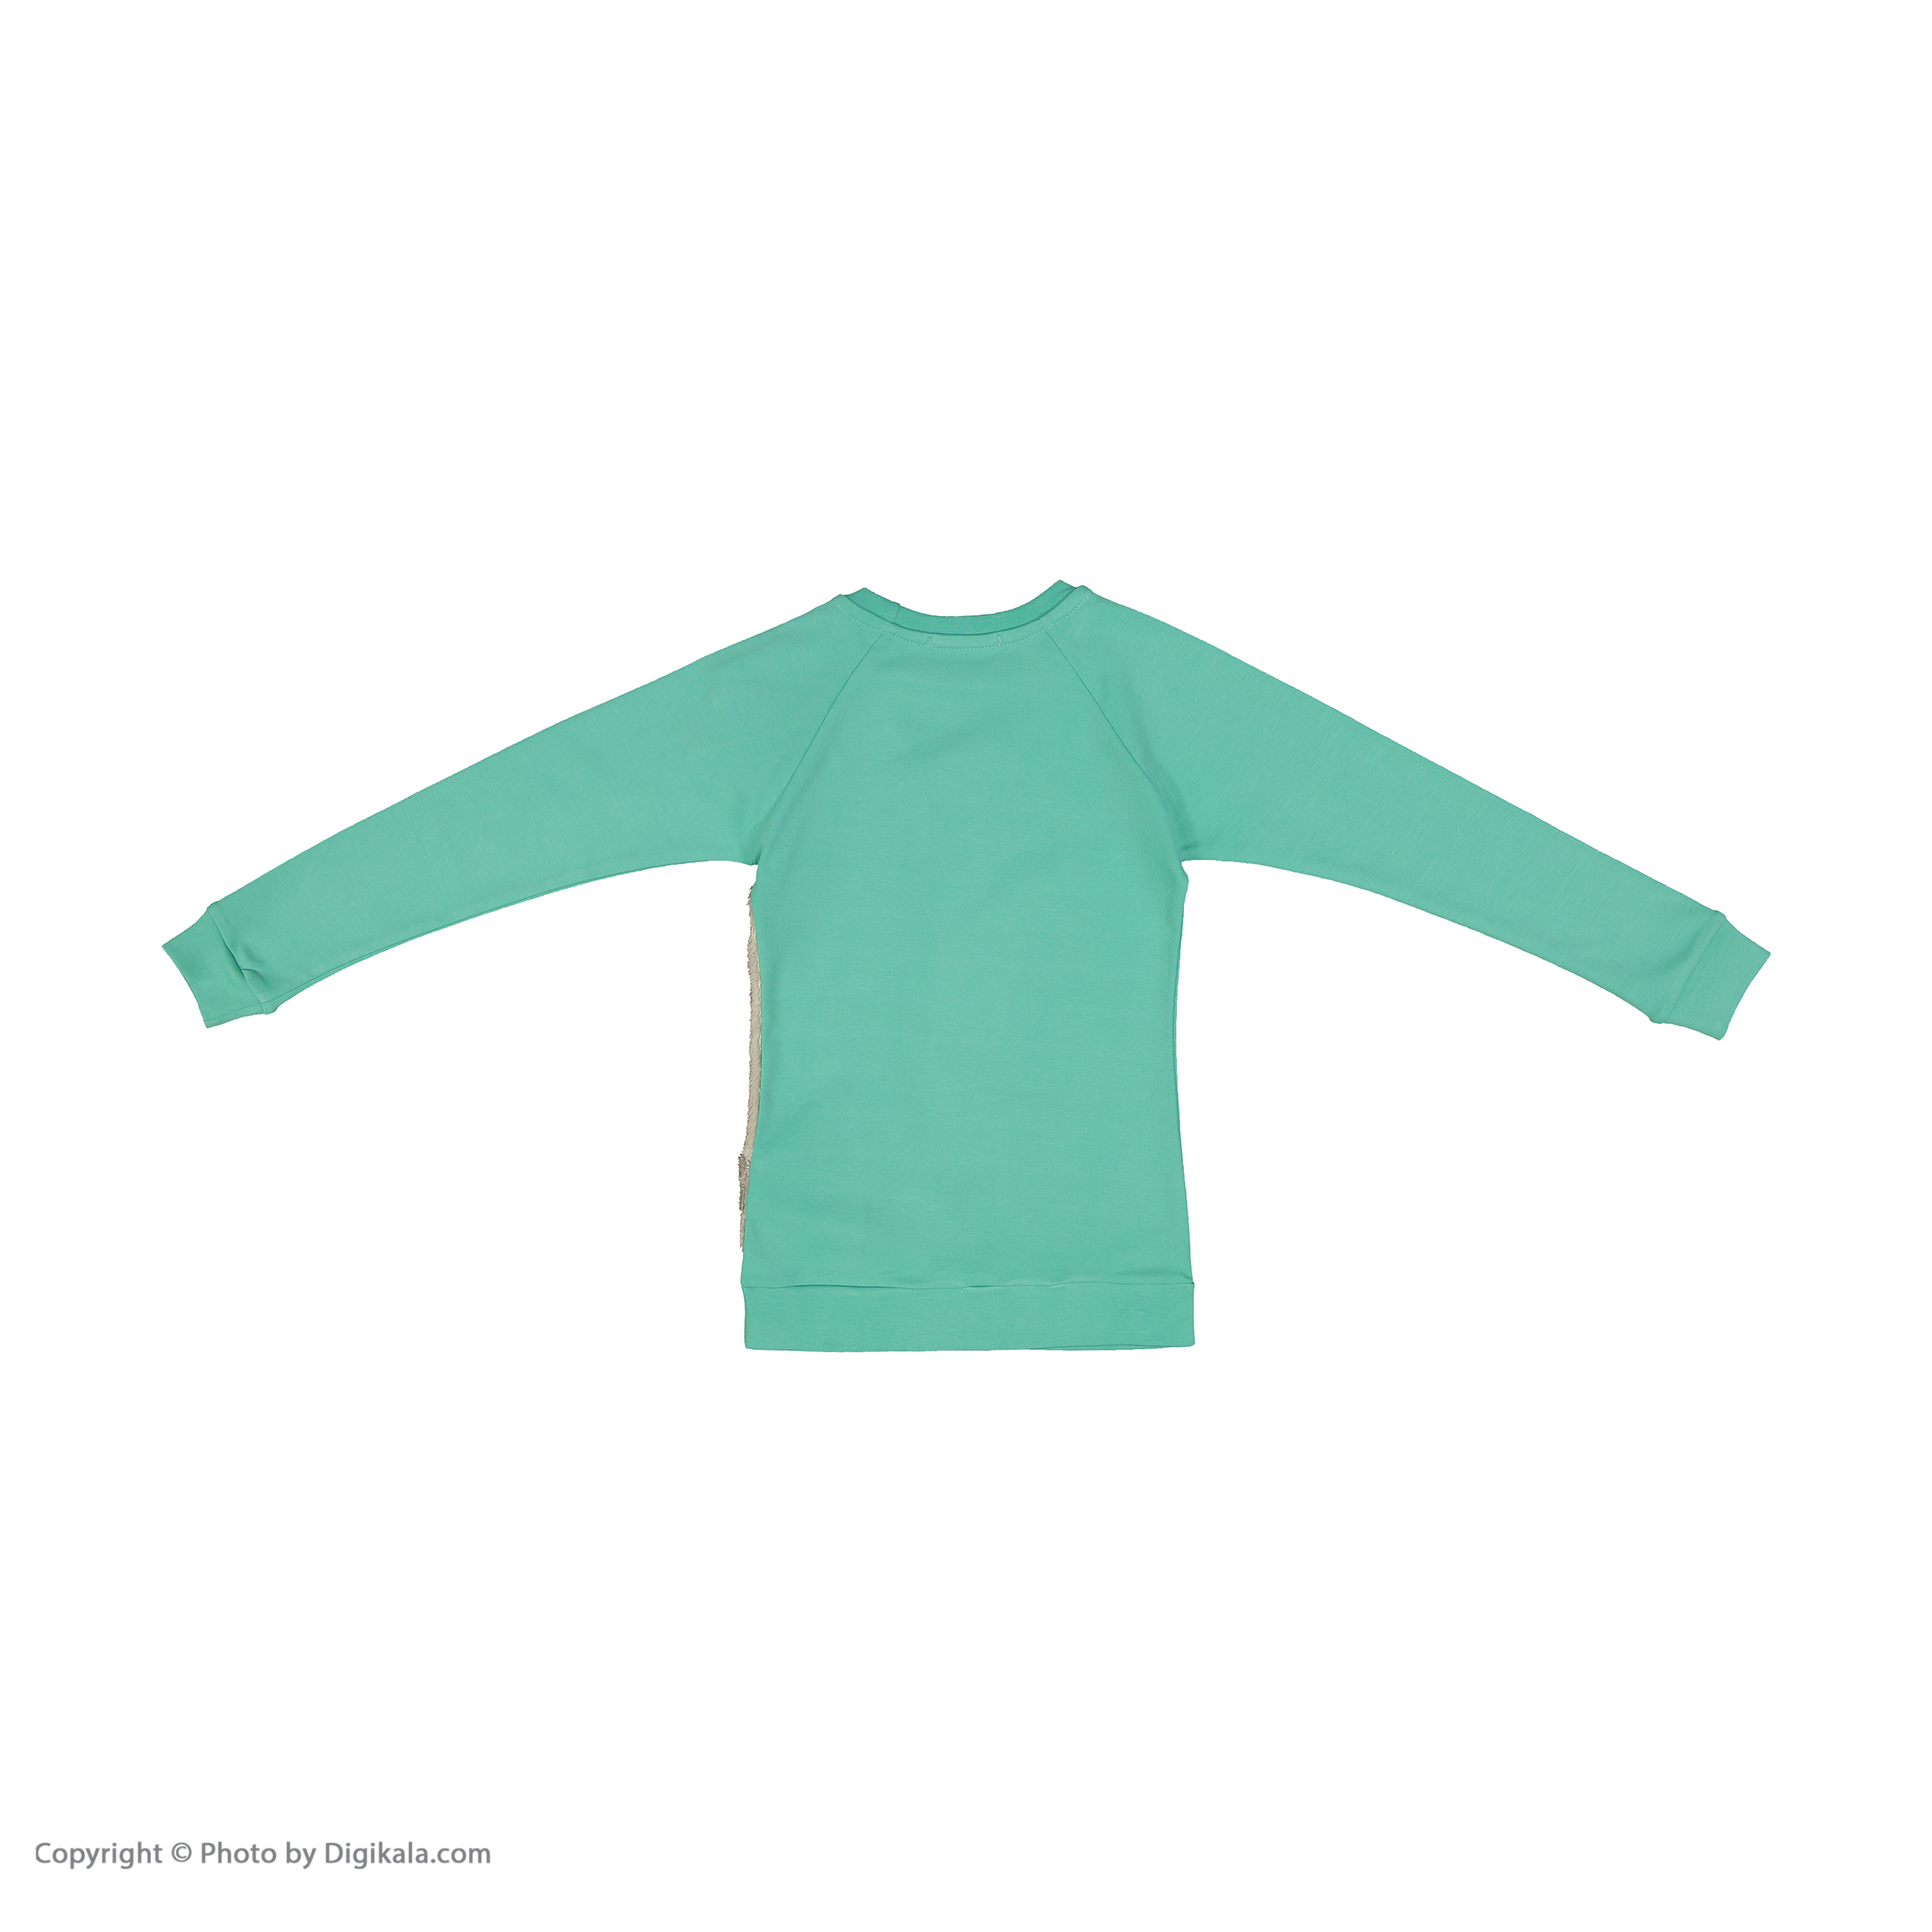 ست تی شرت و شلوار دخترانه مادر مدل SherryTurquoise-54